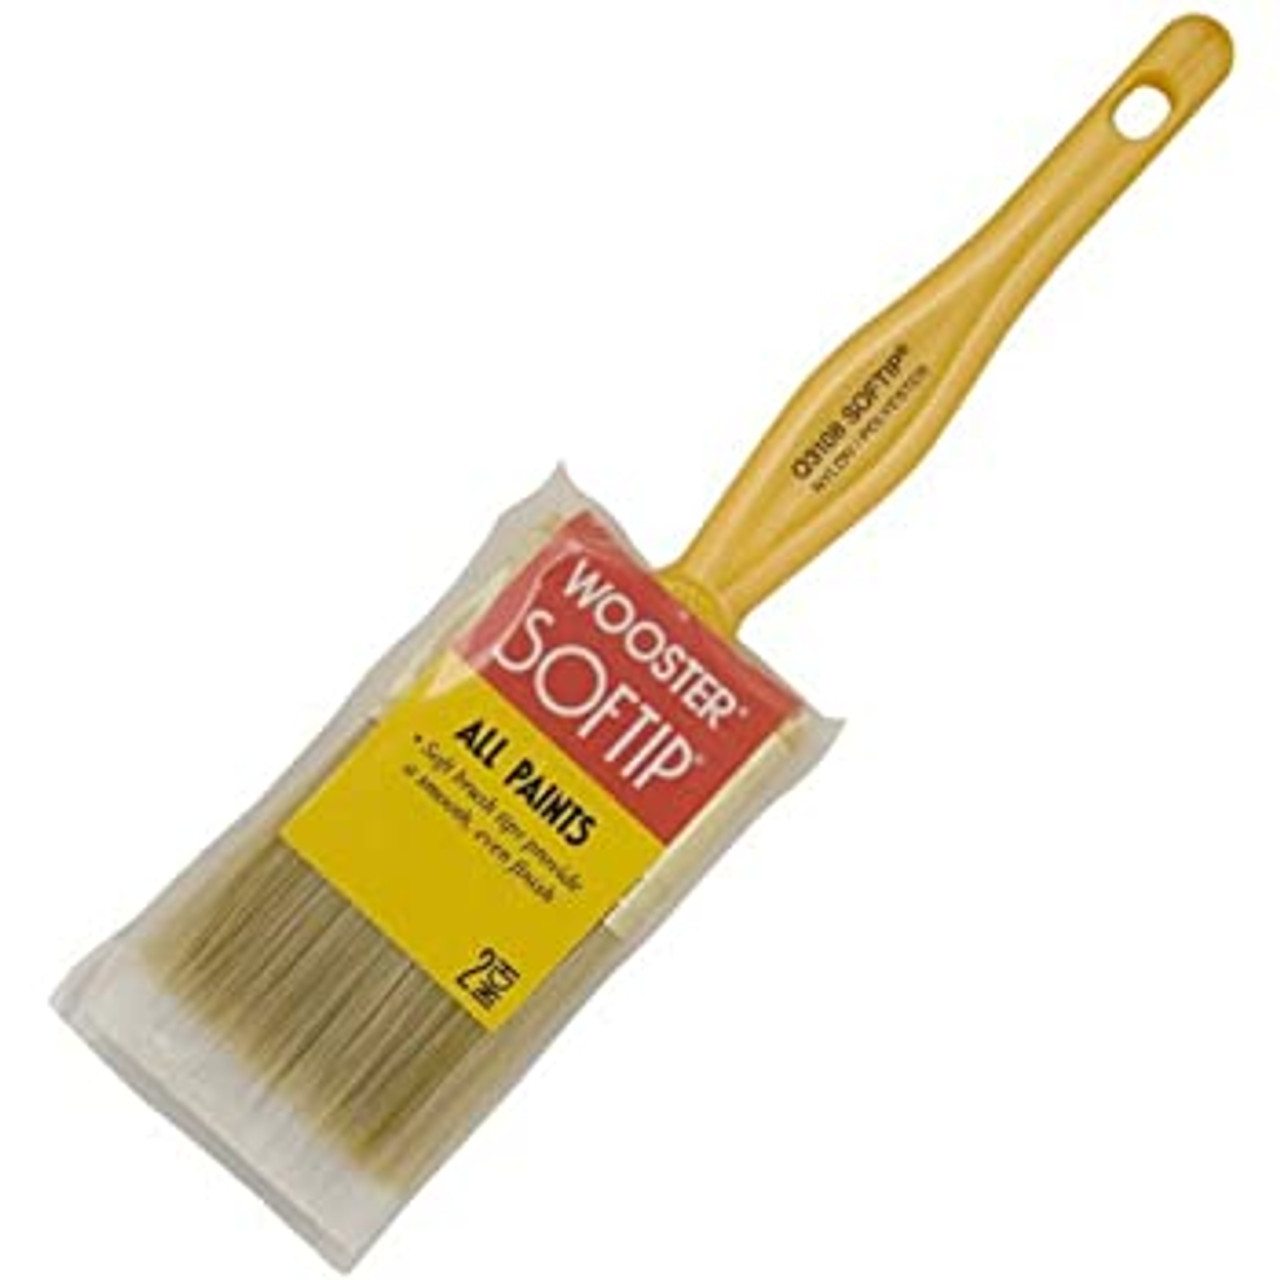 2-Inch Paint Brush